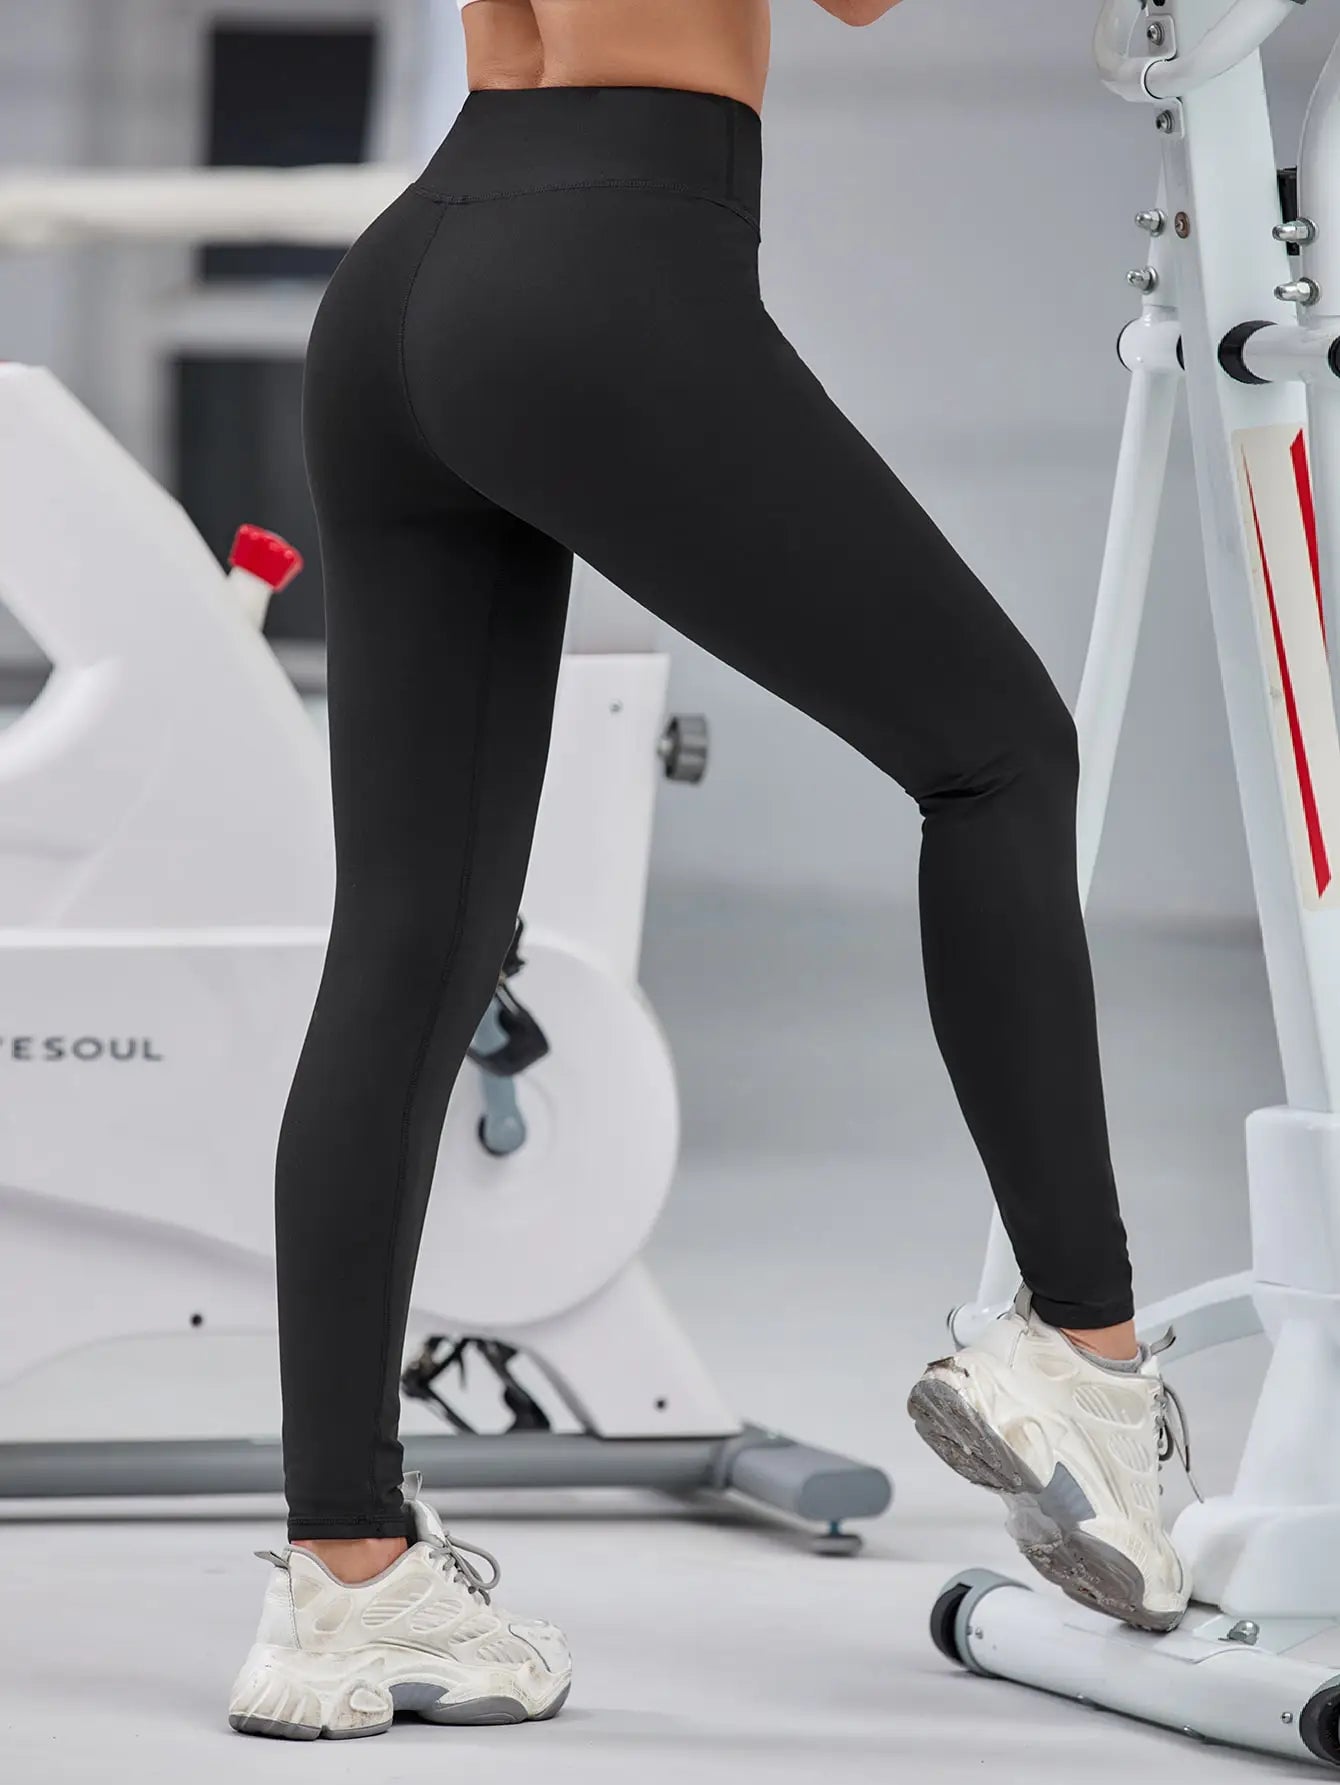 Moda Nova Fitness Mulheres Leggings Desportivos Calças De Yoga Sem Costura  V Waist Push Up Stretchy High Gym Exercício